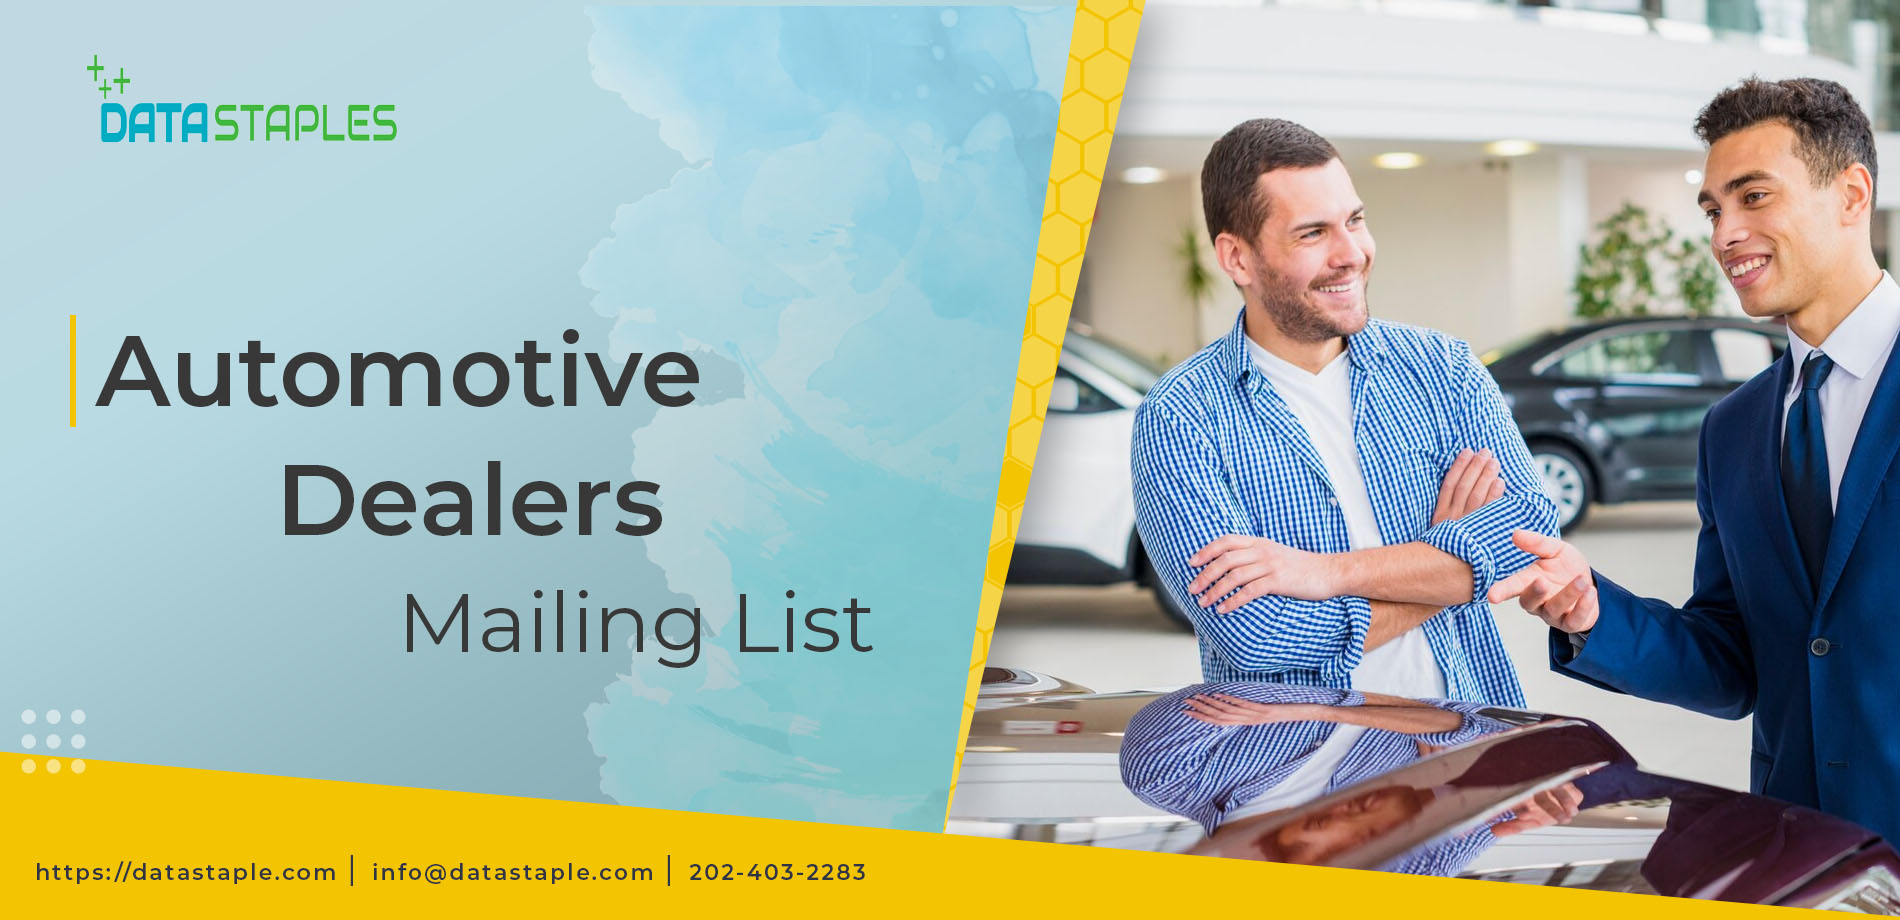 Automotive Dealers Mailing List | DataStaples